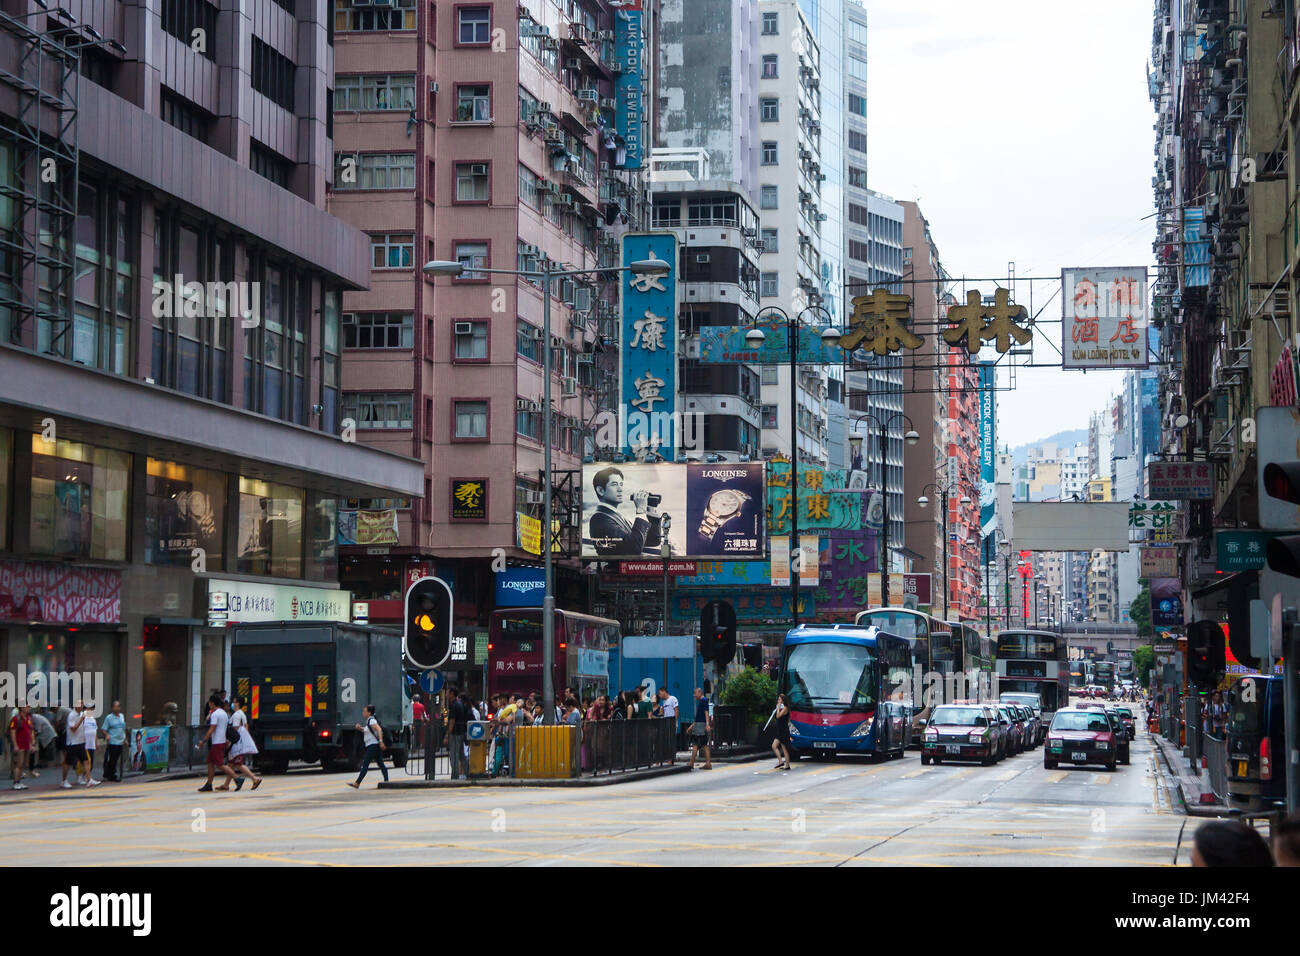 HONG KONG - JULY 17, 2014: Street traffic in central Hong Kong, China. Stock Photo